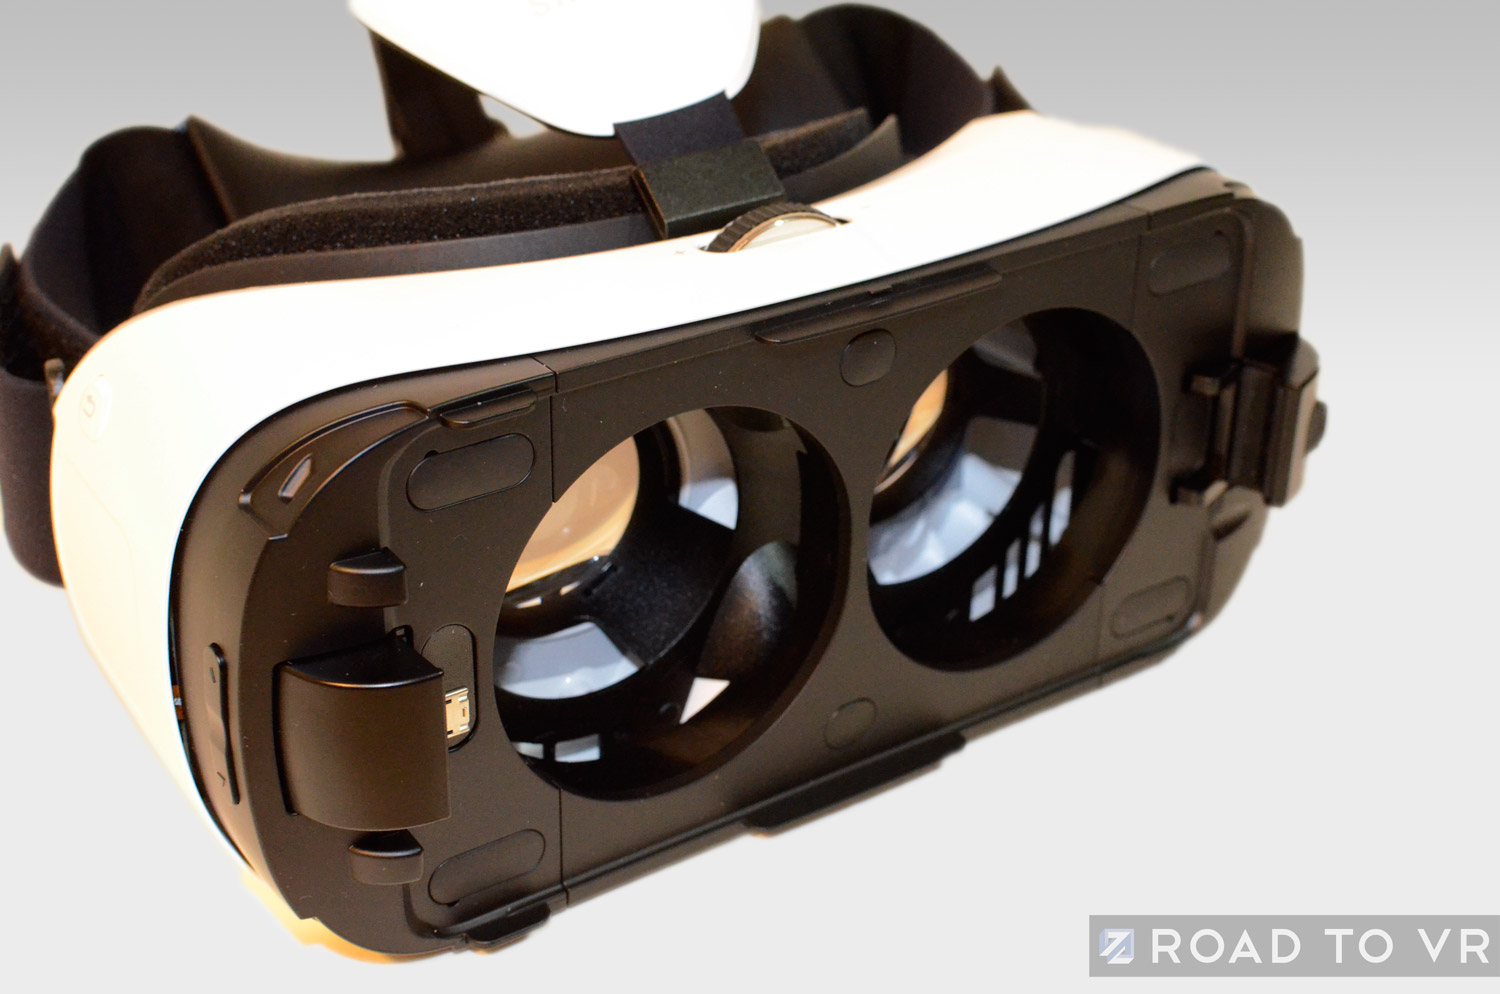 Shipwreck Vær stille Også Samsung Gear VR Review, Part 1: Design Comparison to Oculus Rift DK2